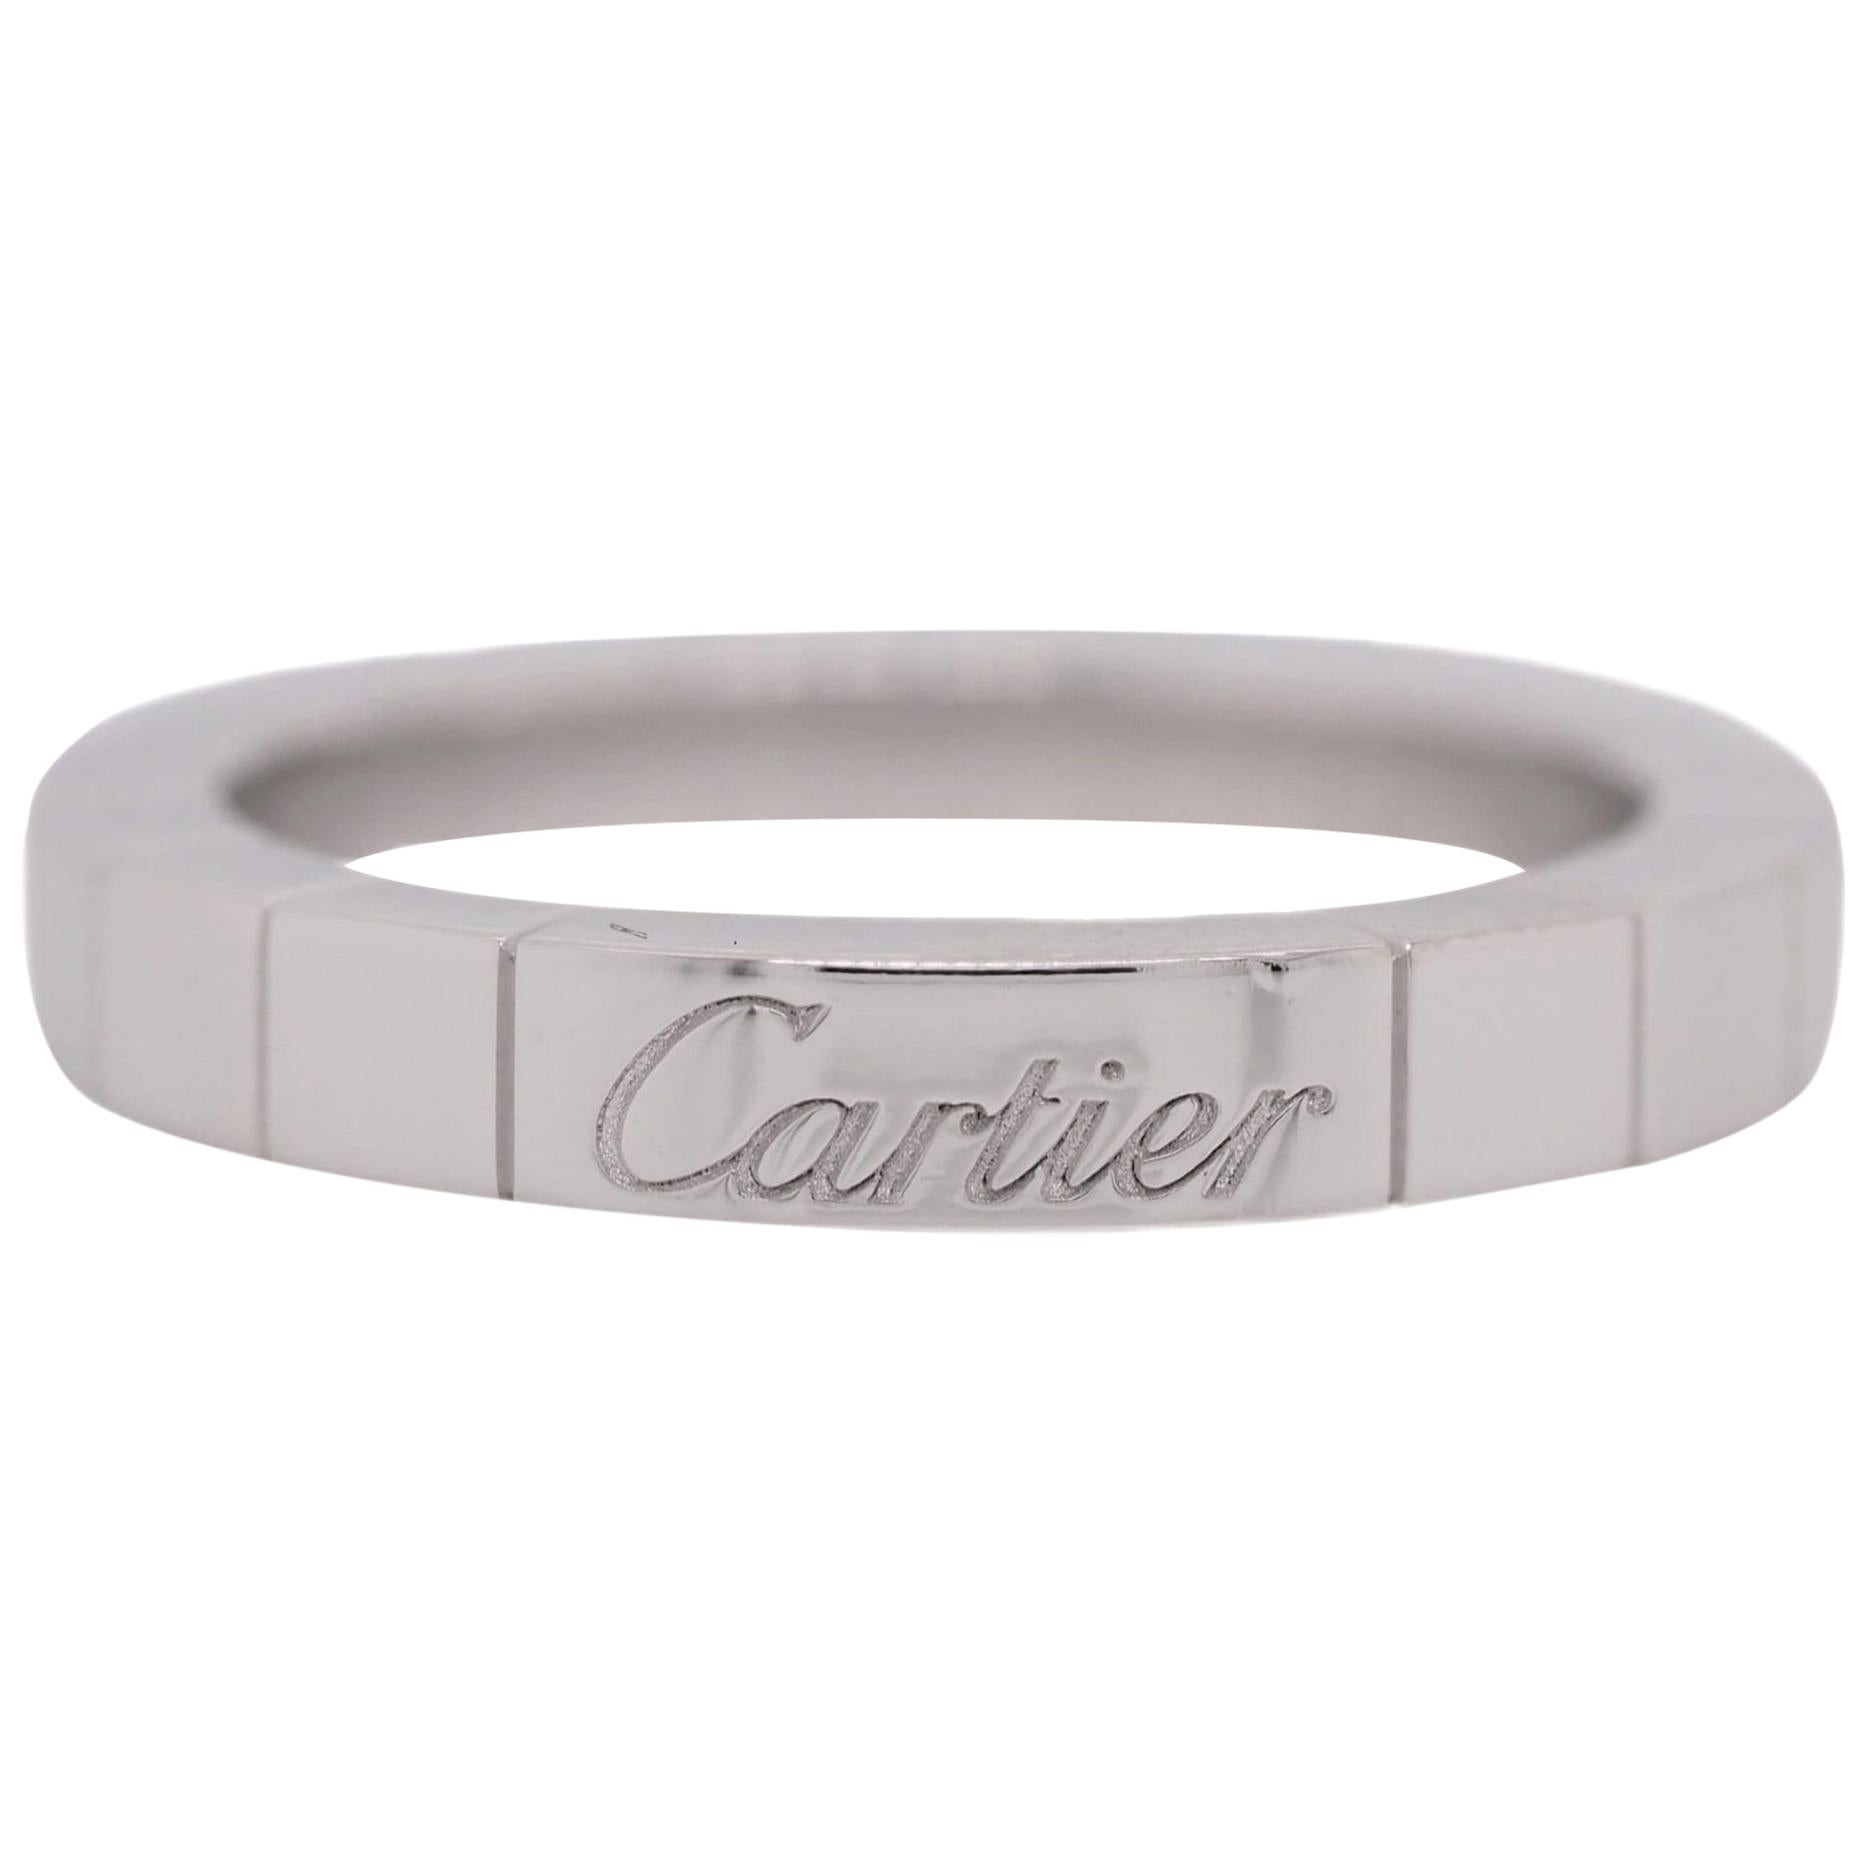 Cartier 18 Karat White Gold Lanieres Band